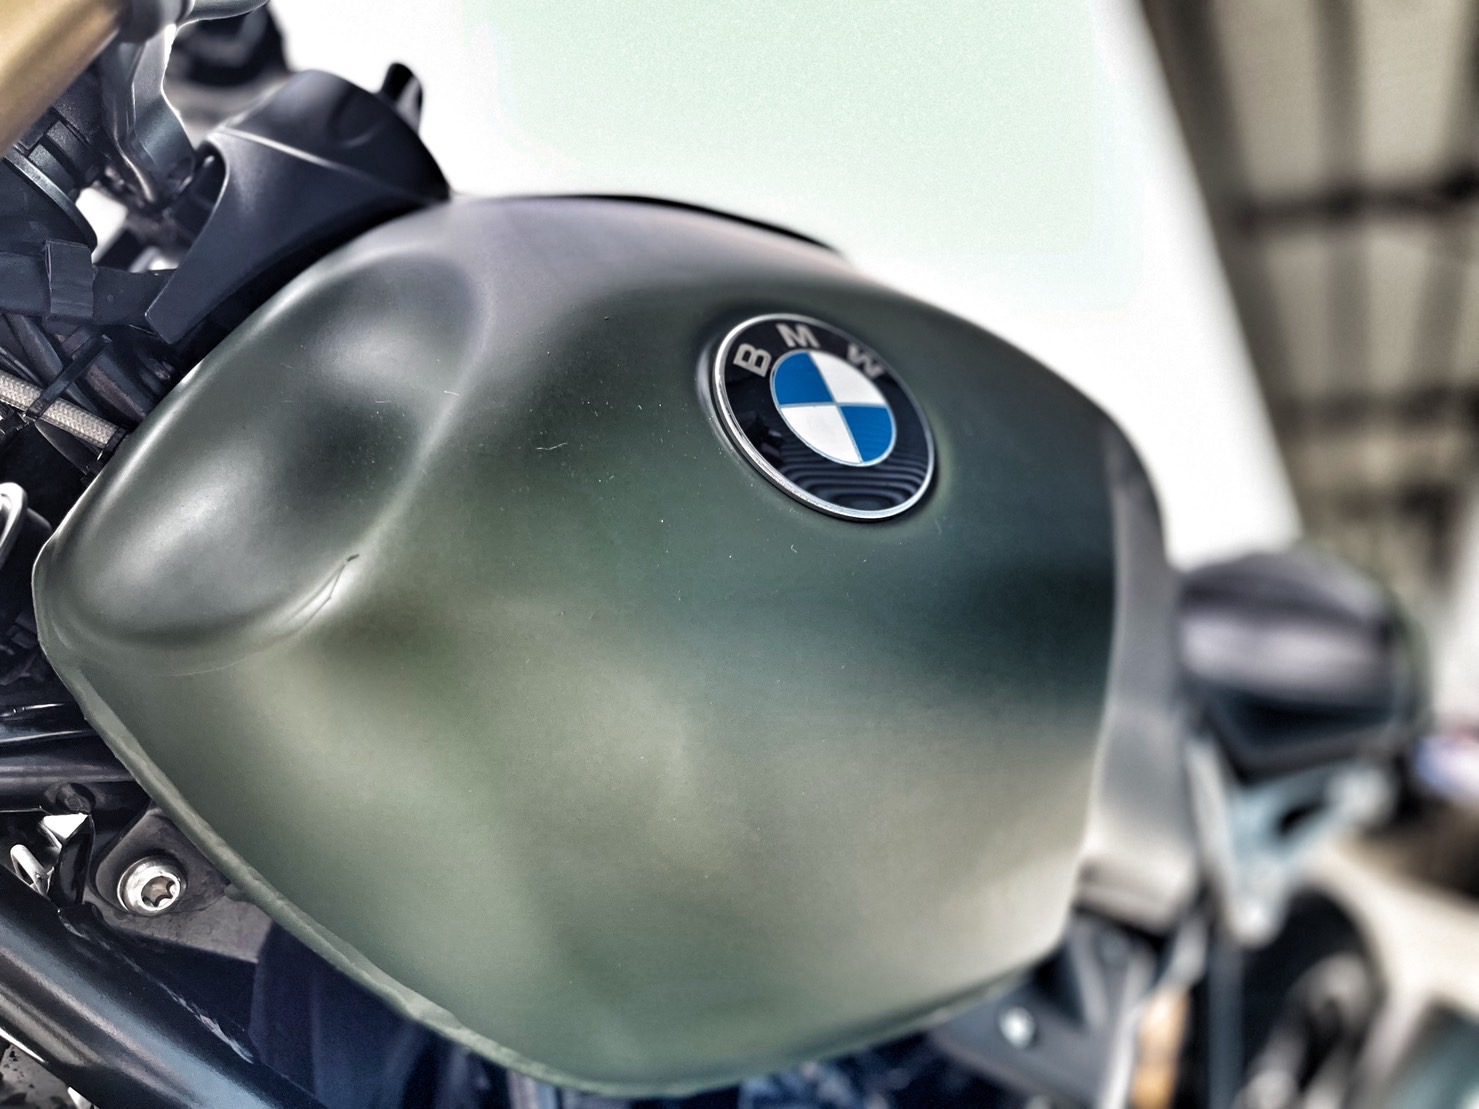 BMW R nineT - 中古/二手車出售中 視覺改裝 無摔無事故 里程保証 小資族二手重機買賣 | 小資族二手重機買賣